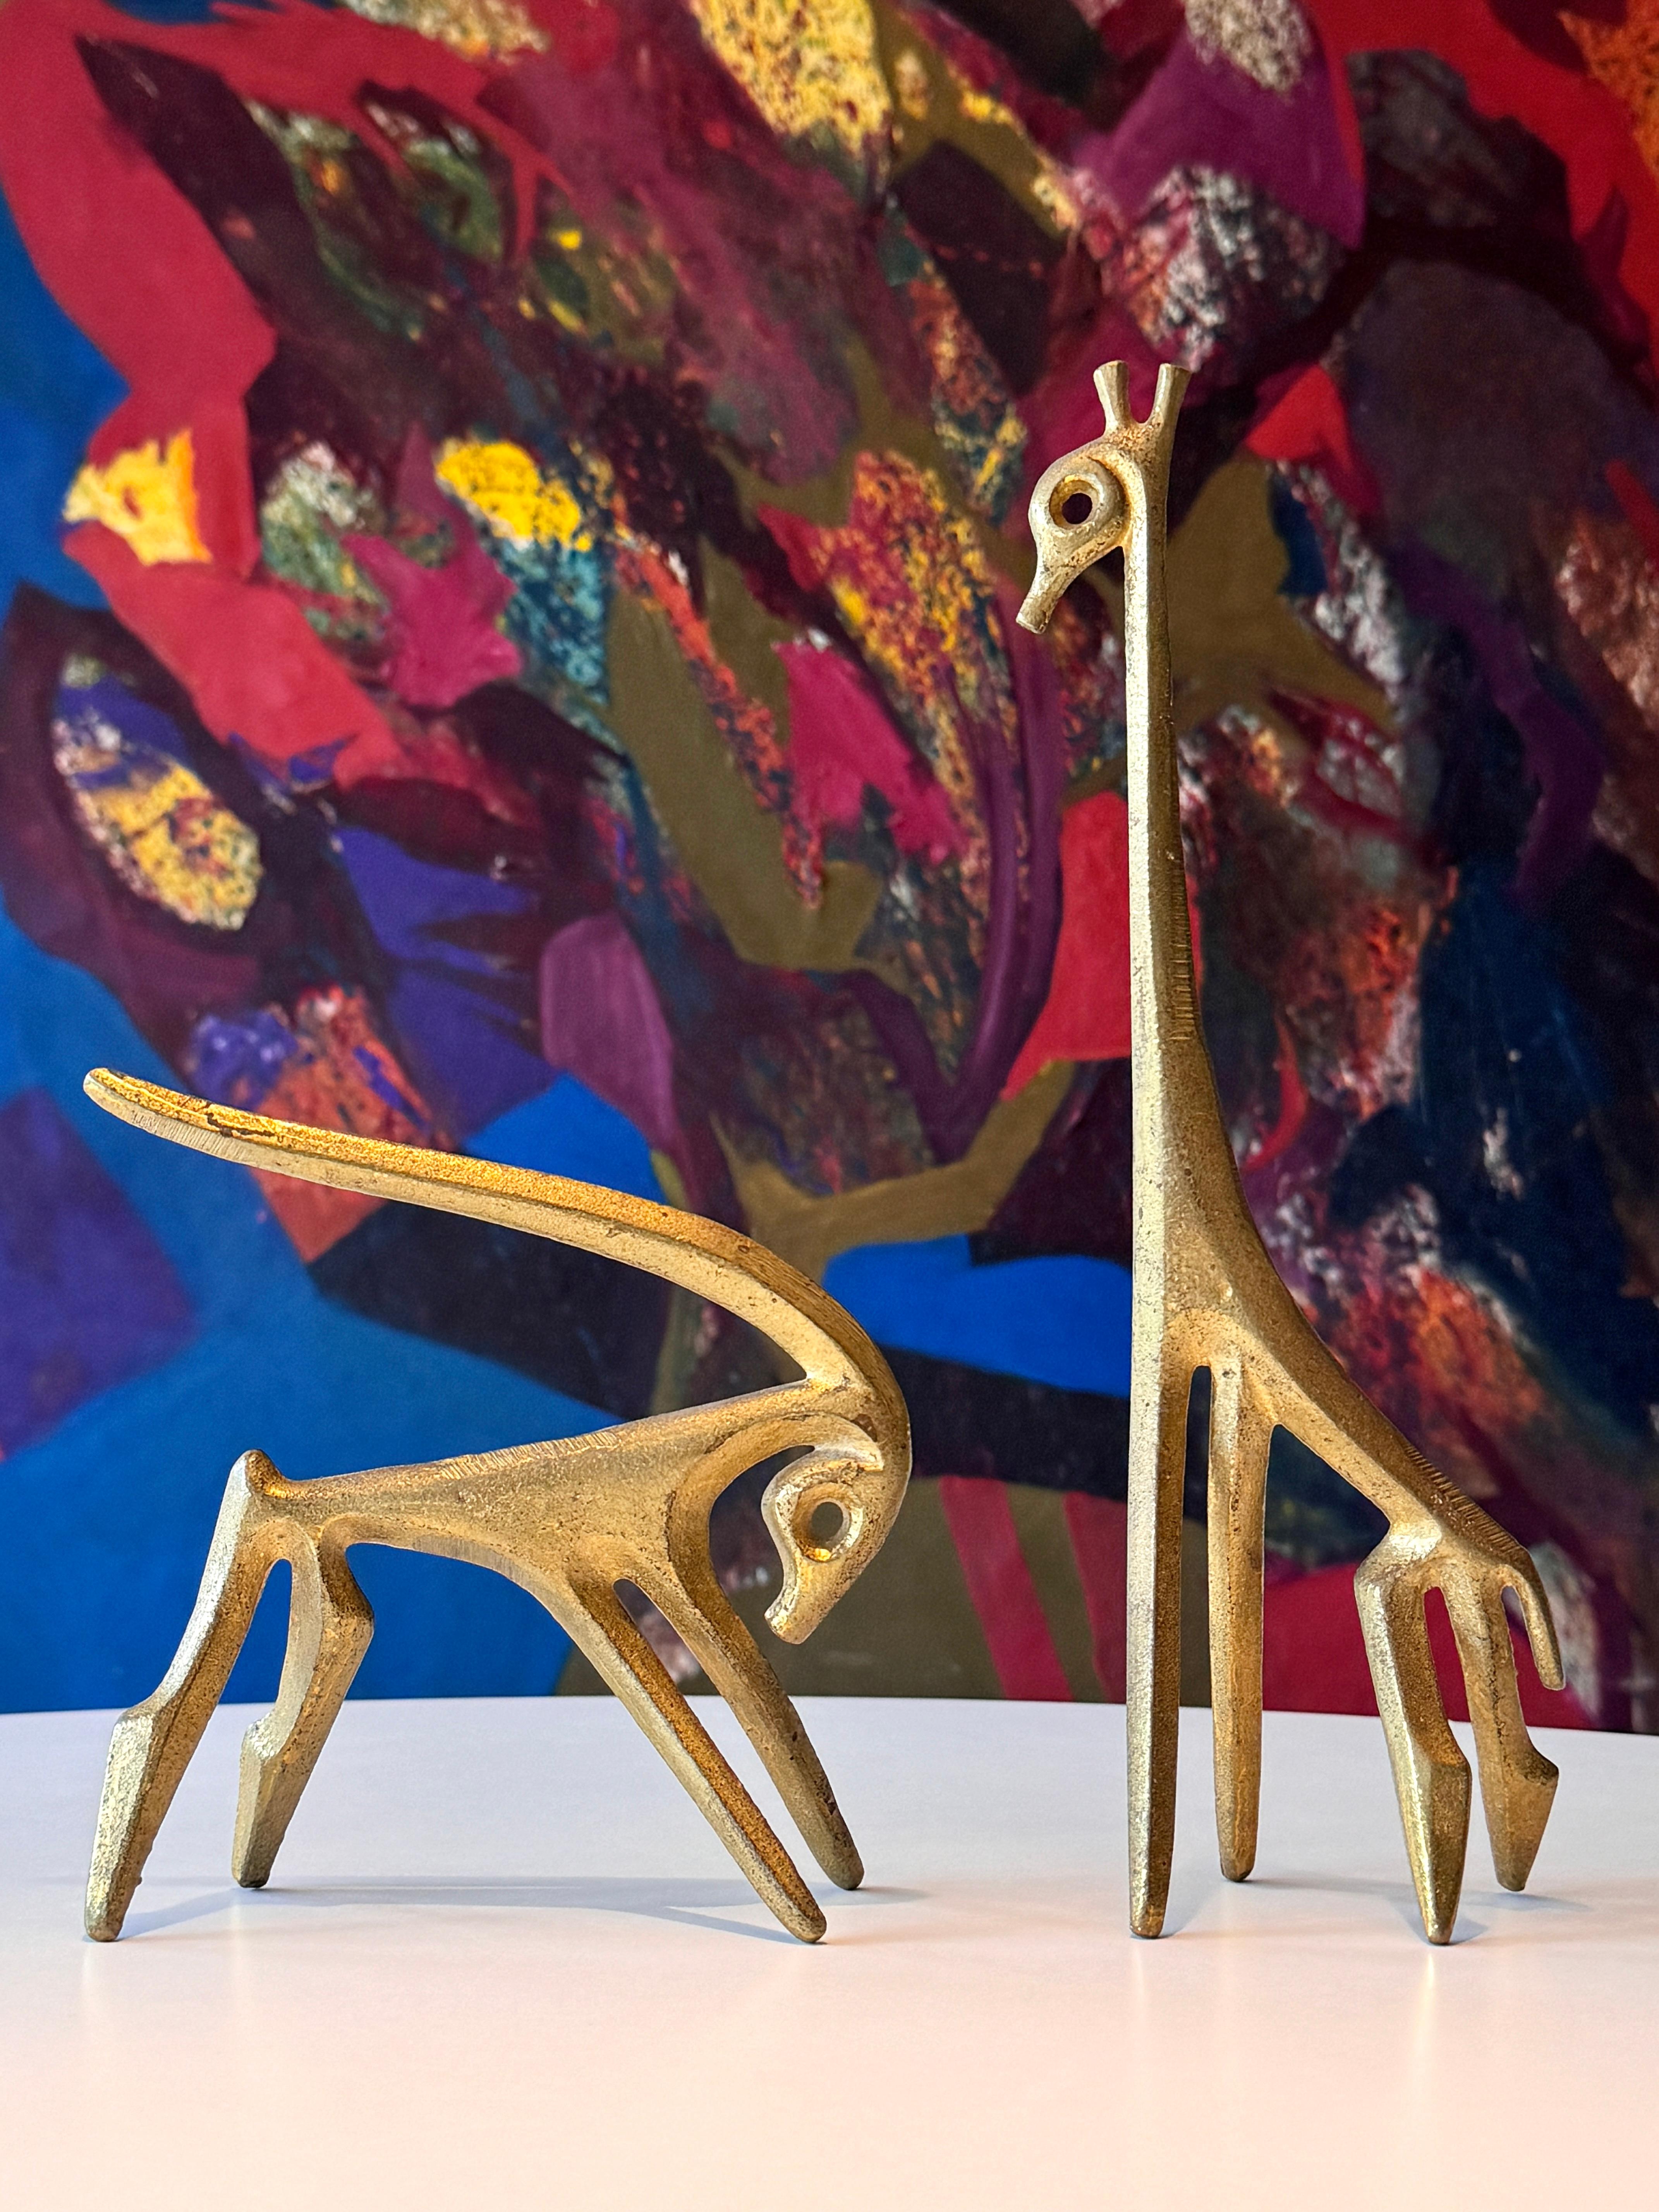 Paire de tables-sculptures modernistes de Frederic Weinberg, circa 1950
Girafe et gazelle en bronze coulé
Tous deux ont signé à l'intérieur de la jambe

girafe
3,5 x 3 x 11,5 pouces

gazelle
6 x 2.5 x 6 pouces